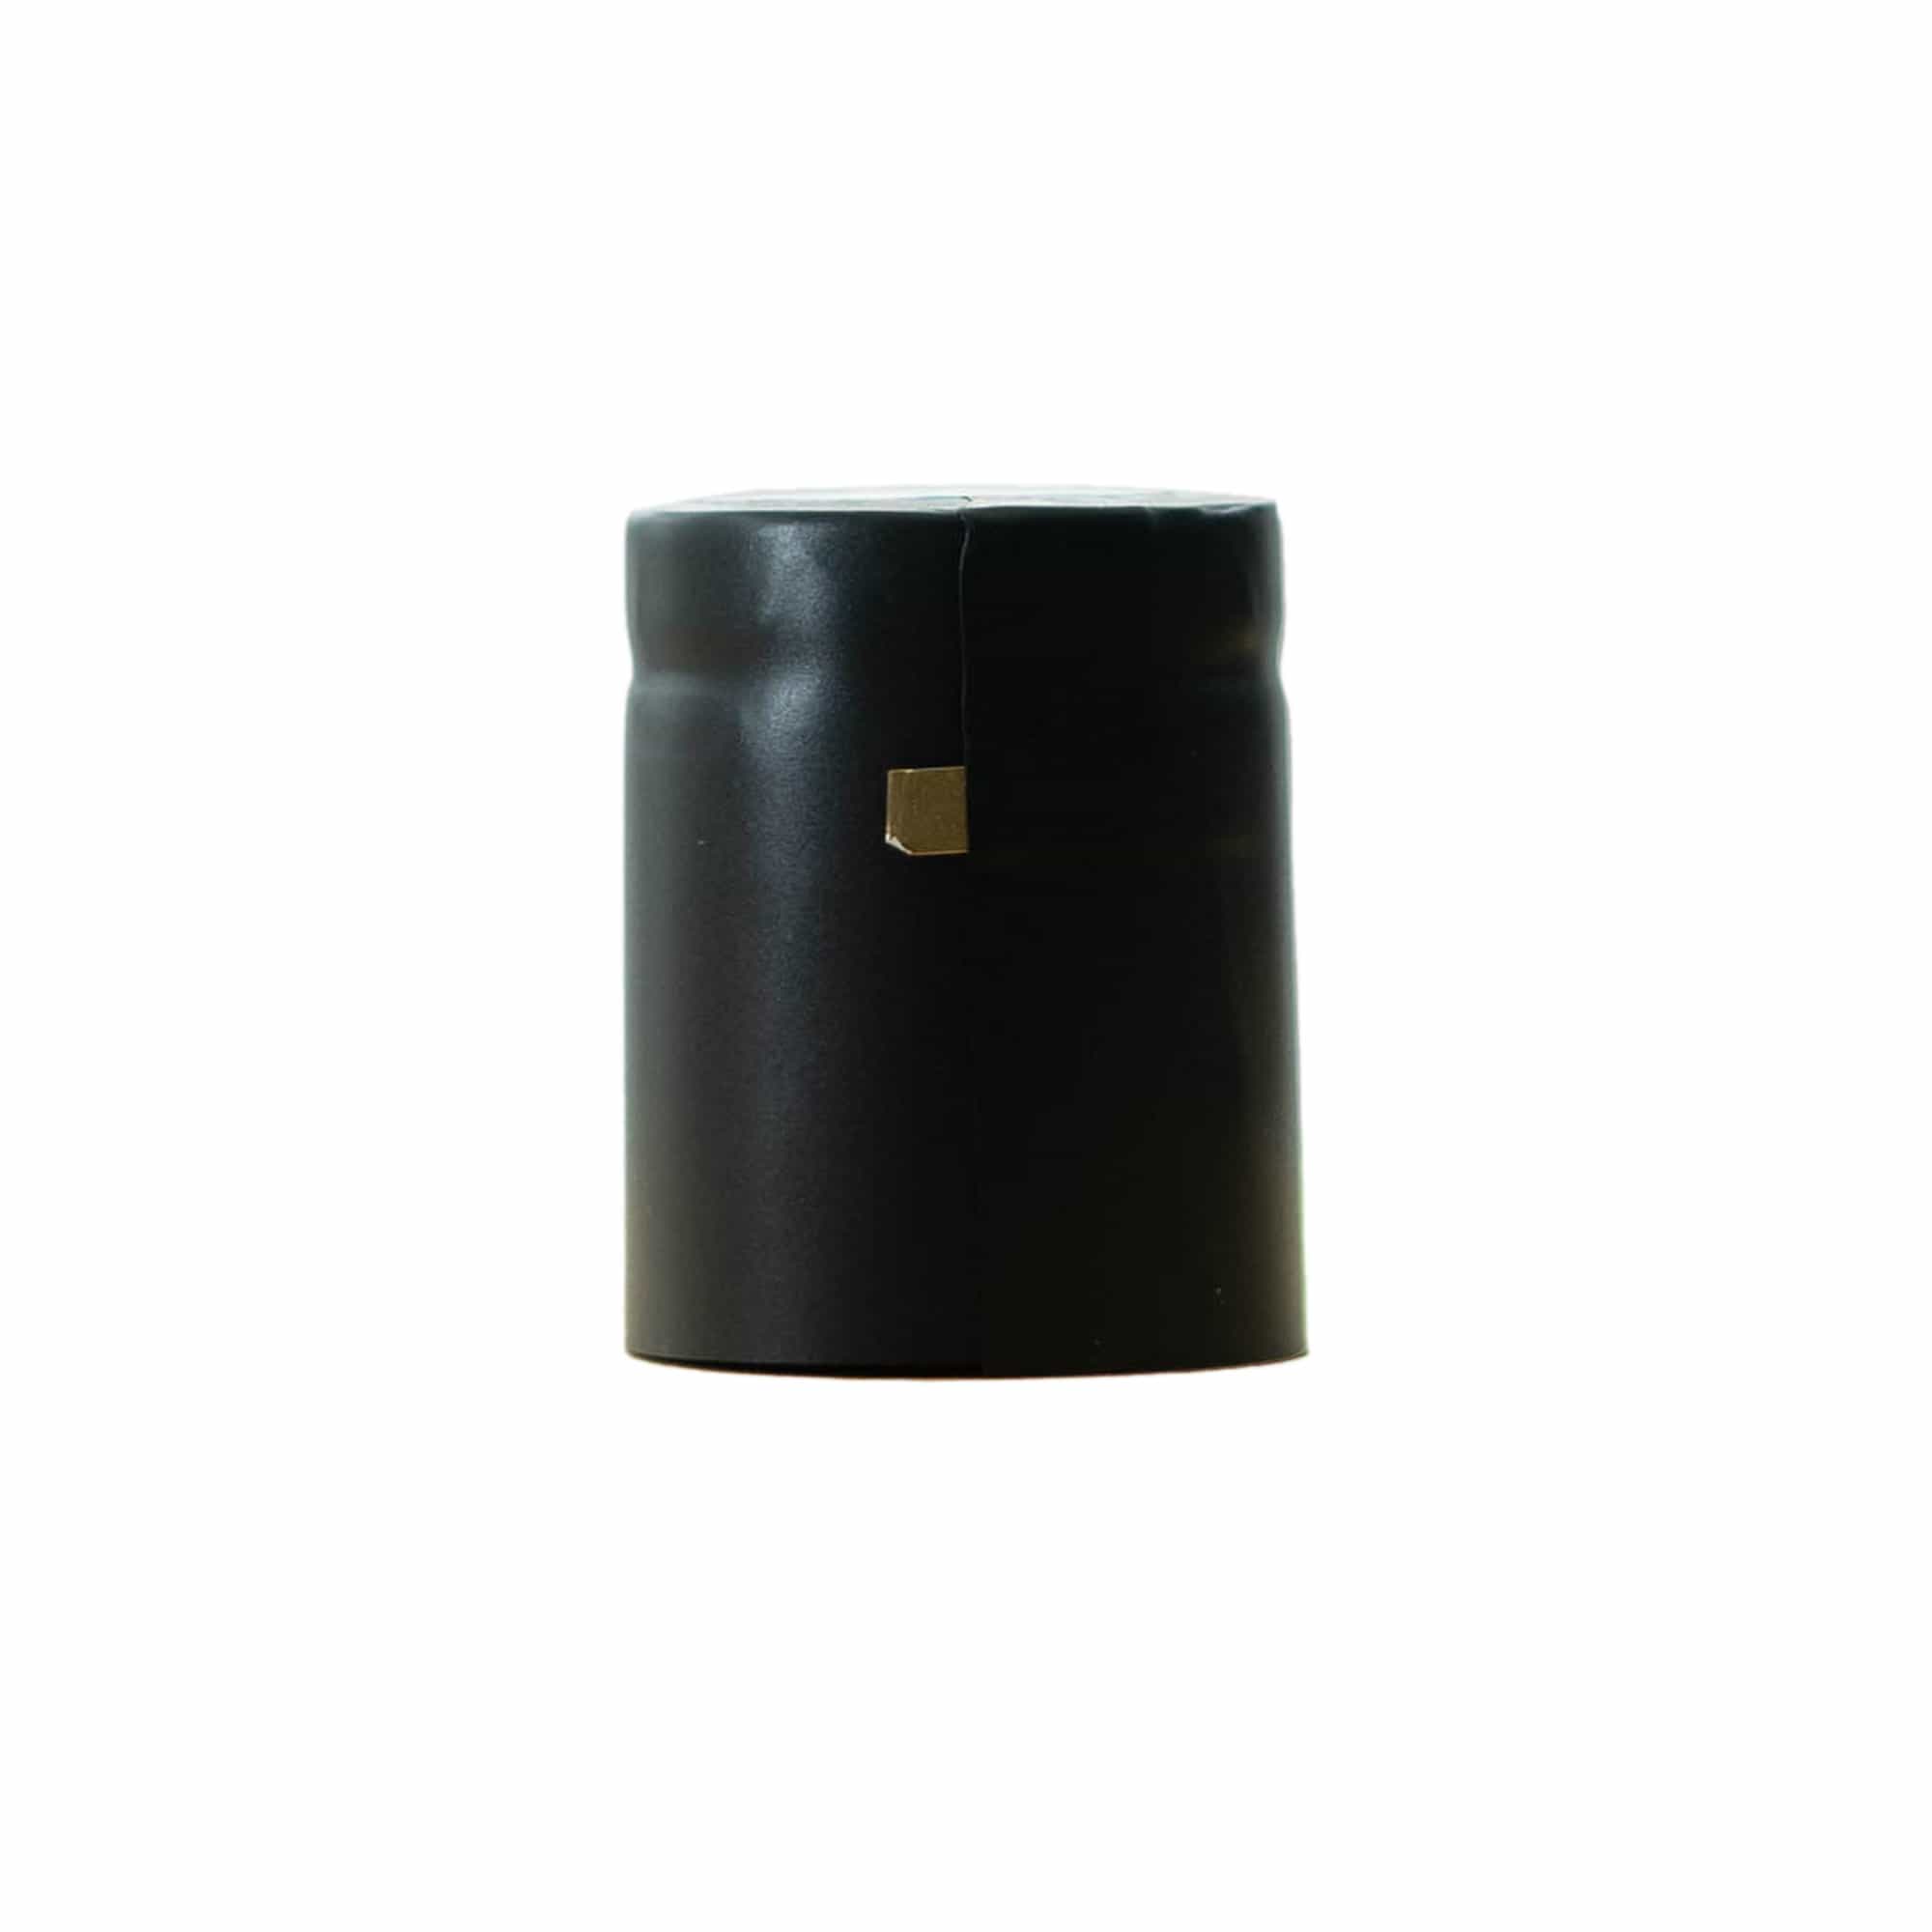 Capsula termoretraibile 32x41, plastica PVC, nero